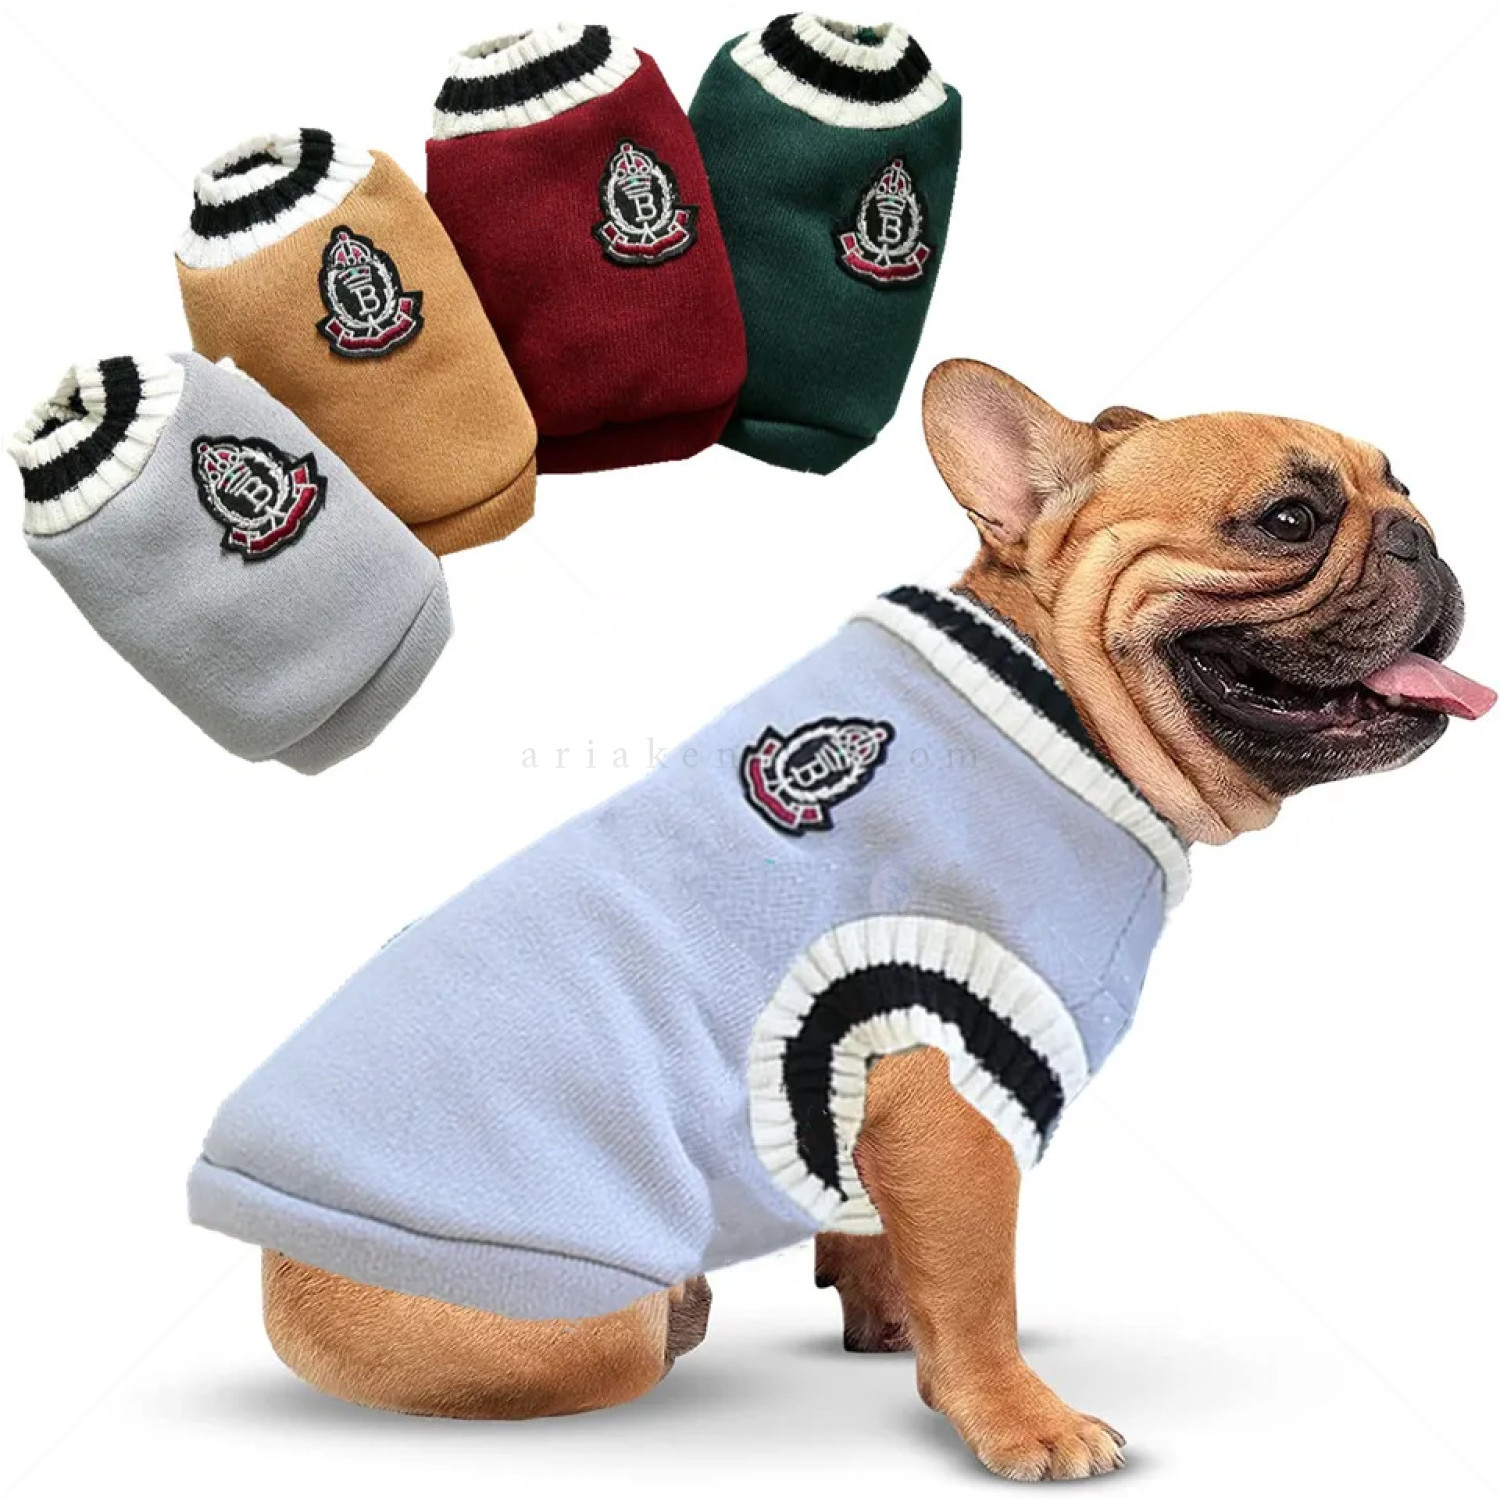 Плетен пуловер с емблема, MINA PET, L, зелен